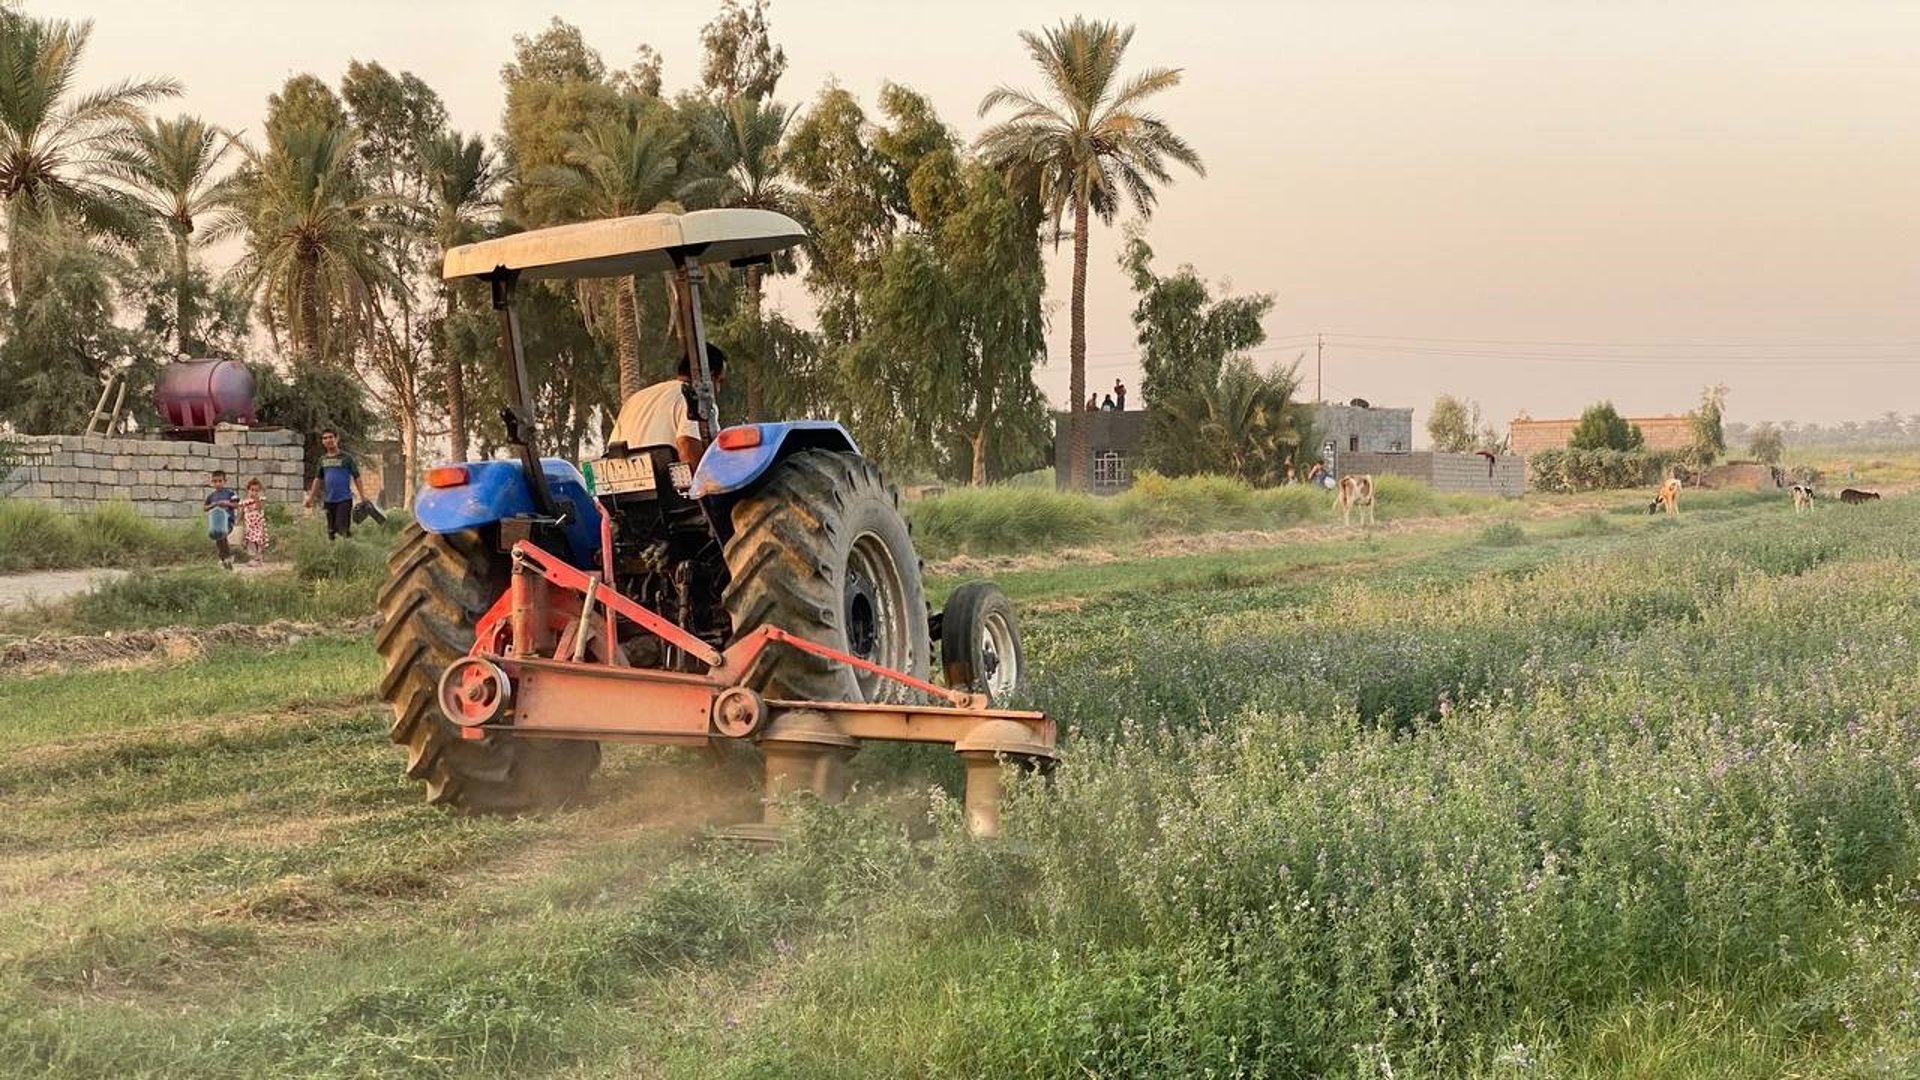 صور من مزارع أبو غريب.. اعتماد أكبر على المكائن وزيادة في البرسيم والذرة »  +964